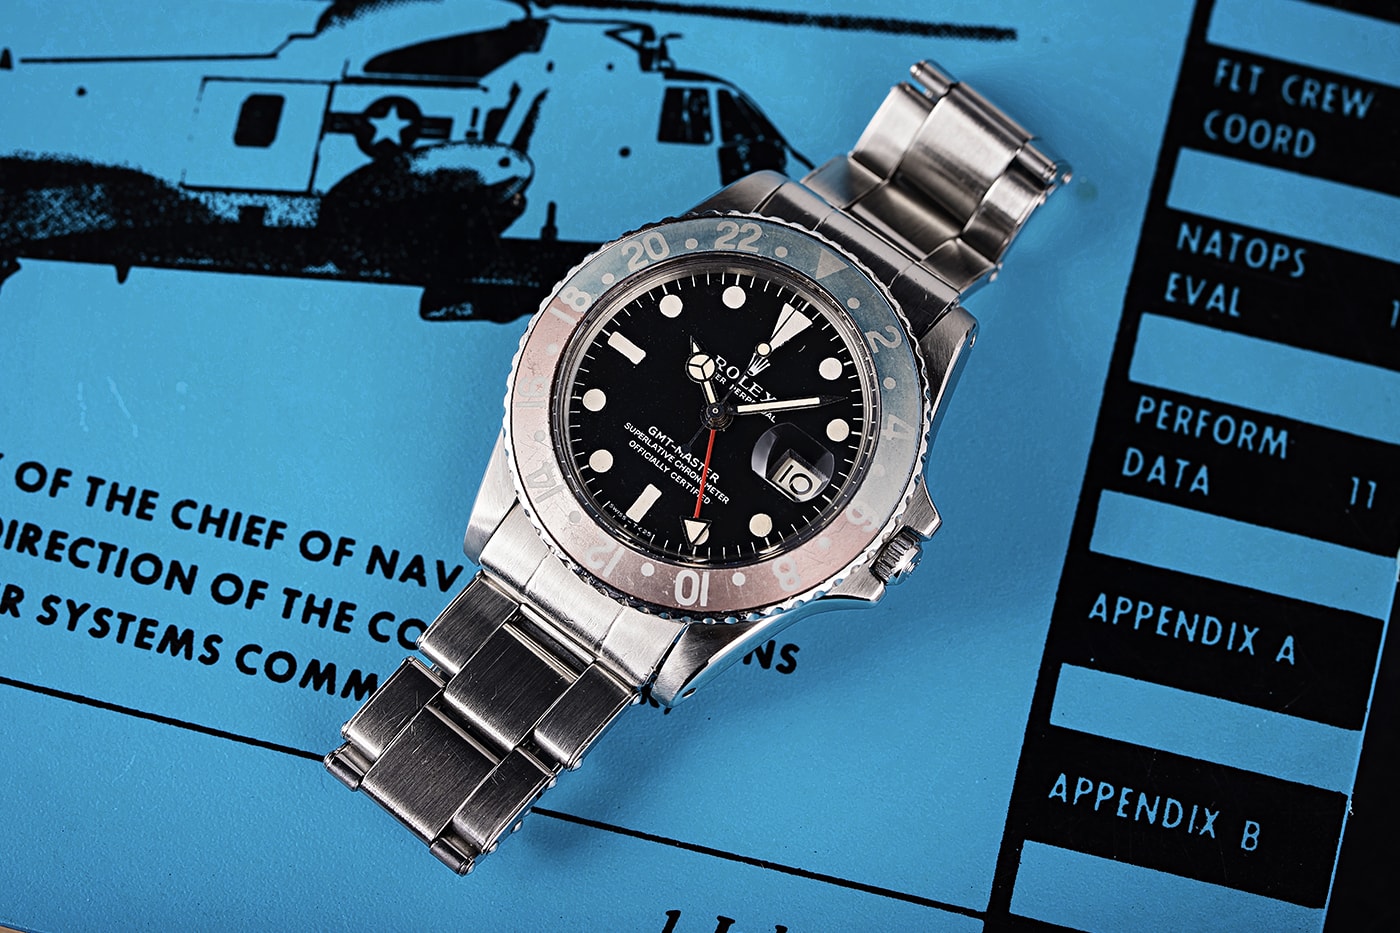 ロレックスの貴重なヴィンテージ GMT マスター 1675 がオークションに登場 Vintage Rolex GMT-Master 1675 Apollo 14 Mission Retrieval Auction Bob's Watches Info